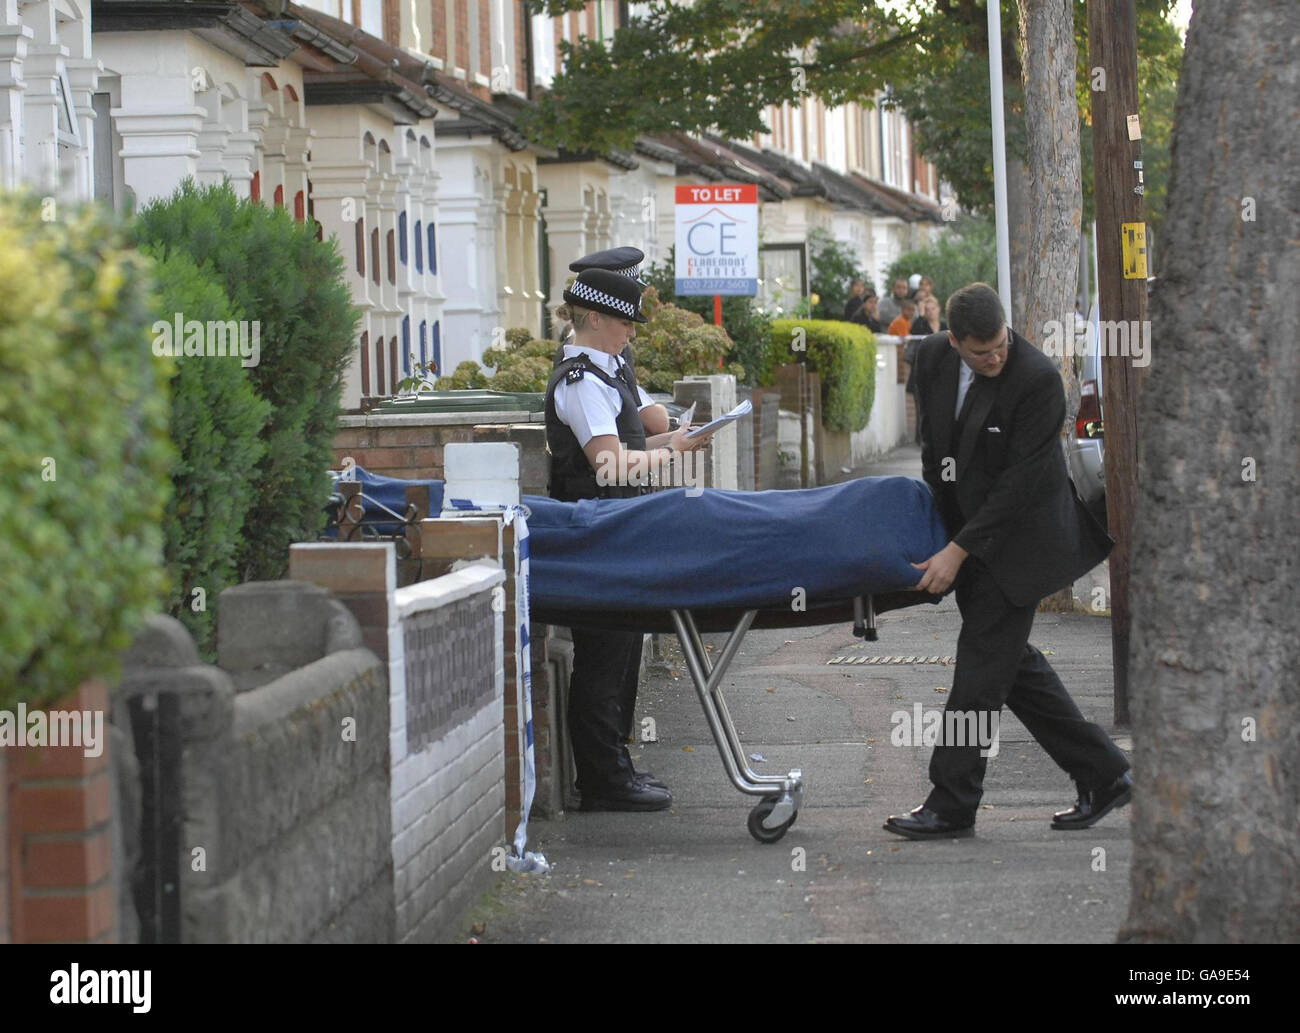 Garçon poignardé à mort dans la rue.Le corps d'un garçon de 17 ans est enlevé d'une maison dans l'est de Londres après un coup de poignarder la nuit dernière. Banque D'Images